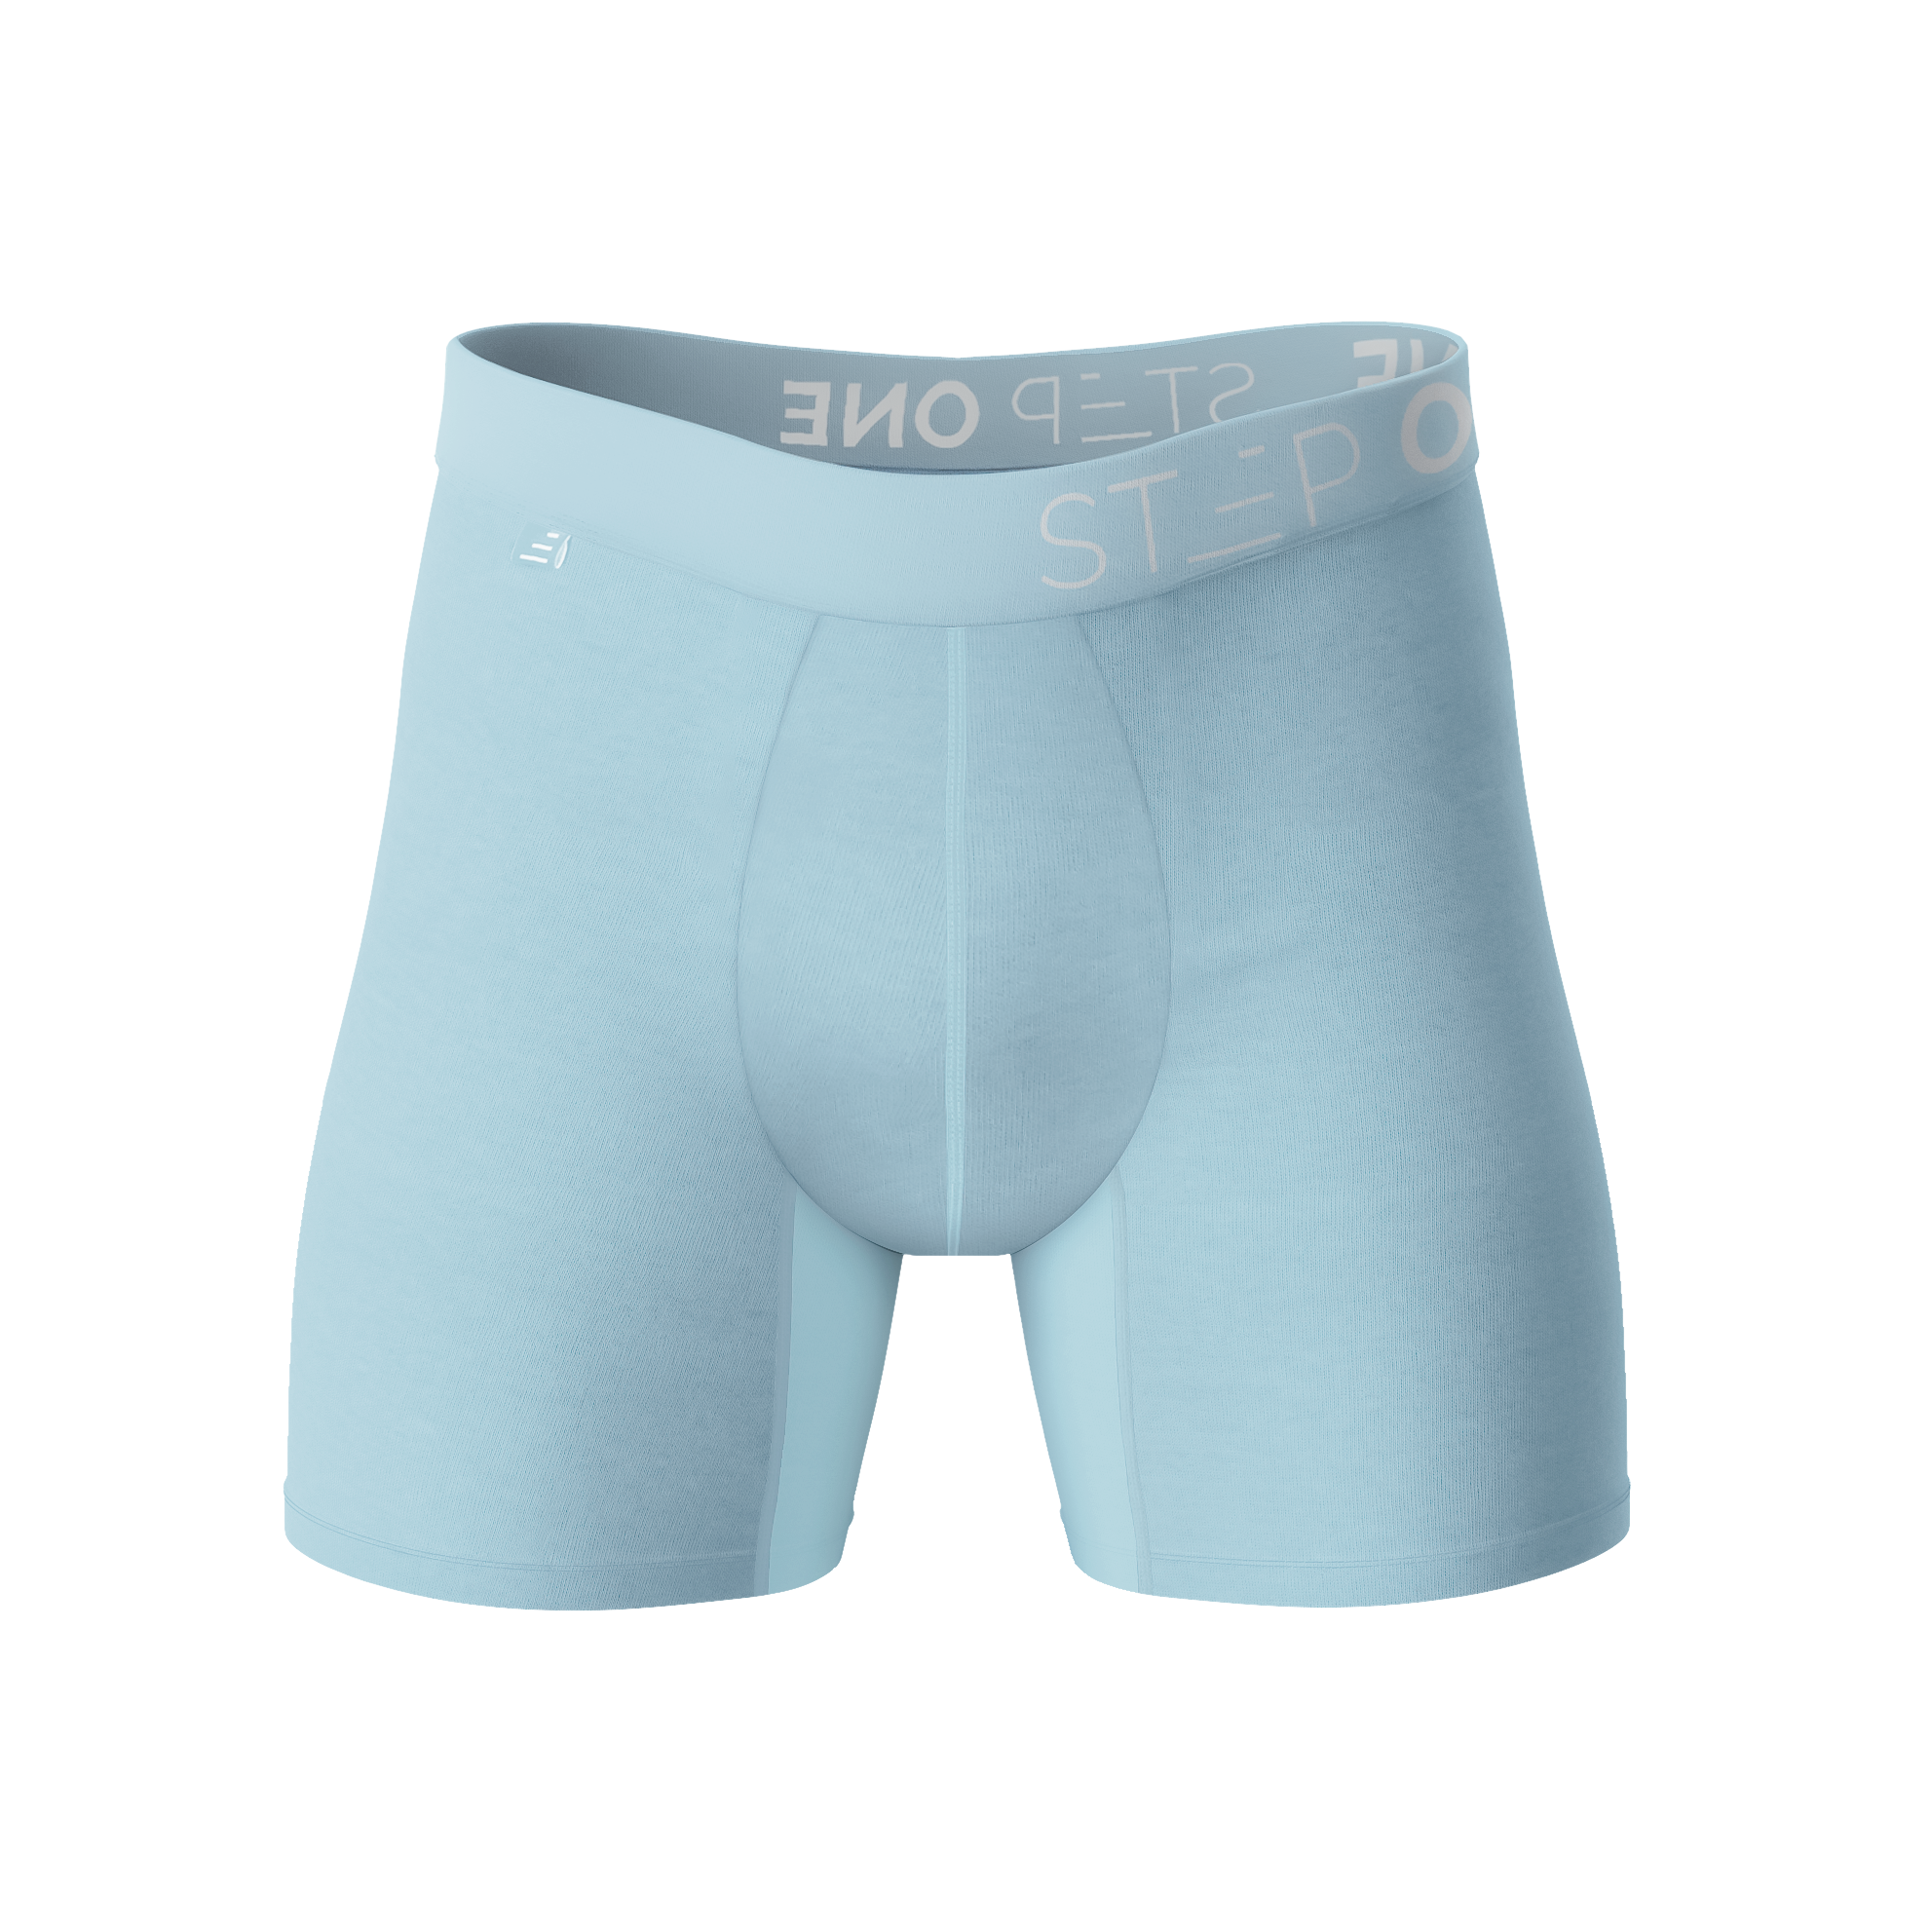 Boxer Brief, Men's Underwear